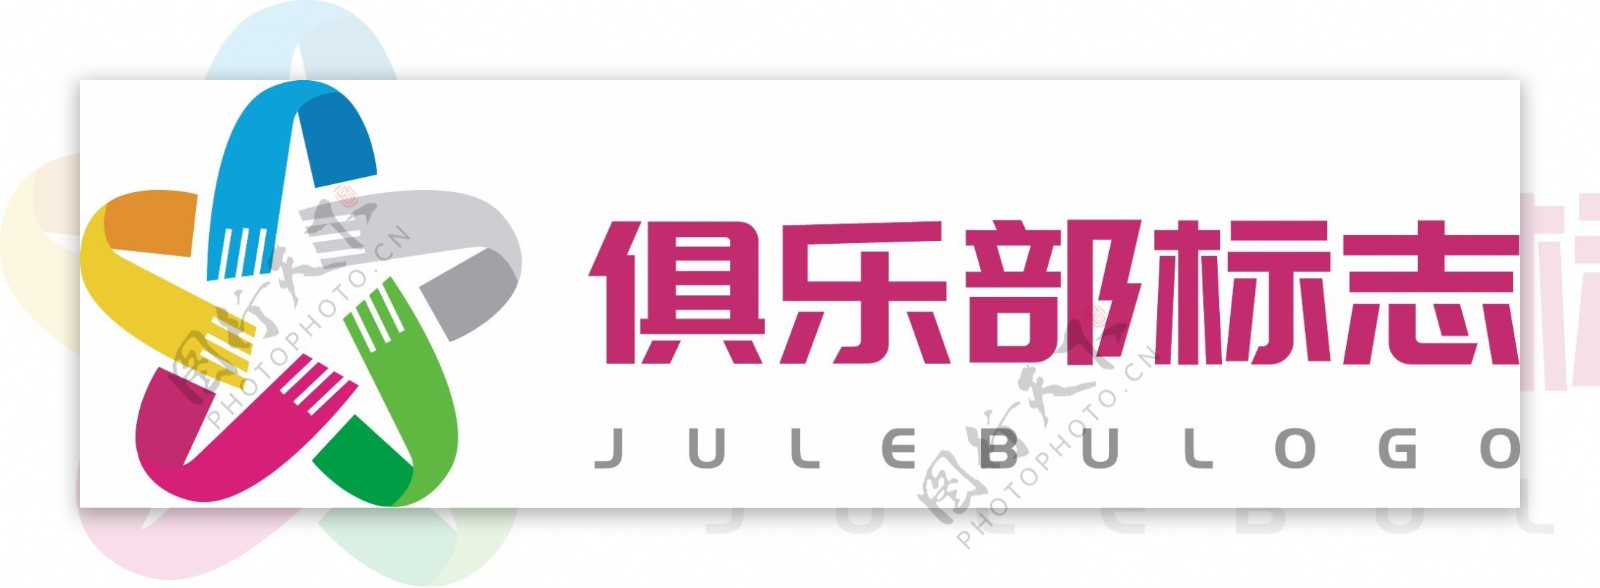 俱乐部多彩logo标志